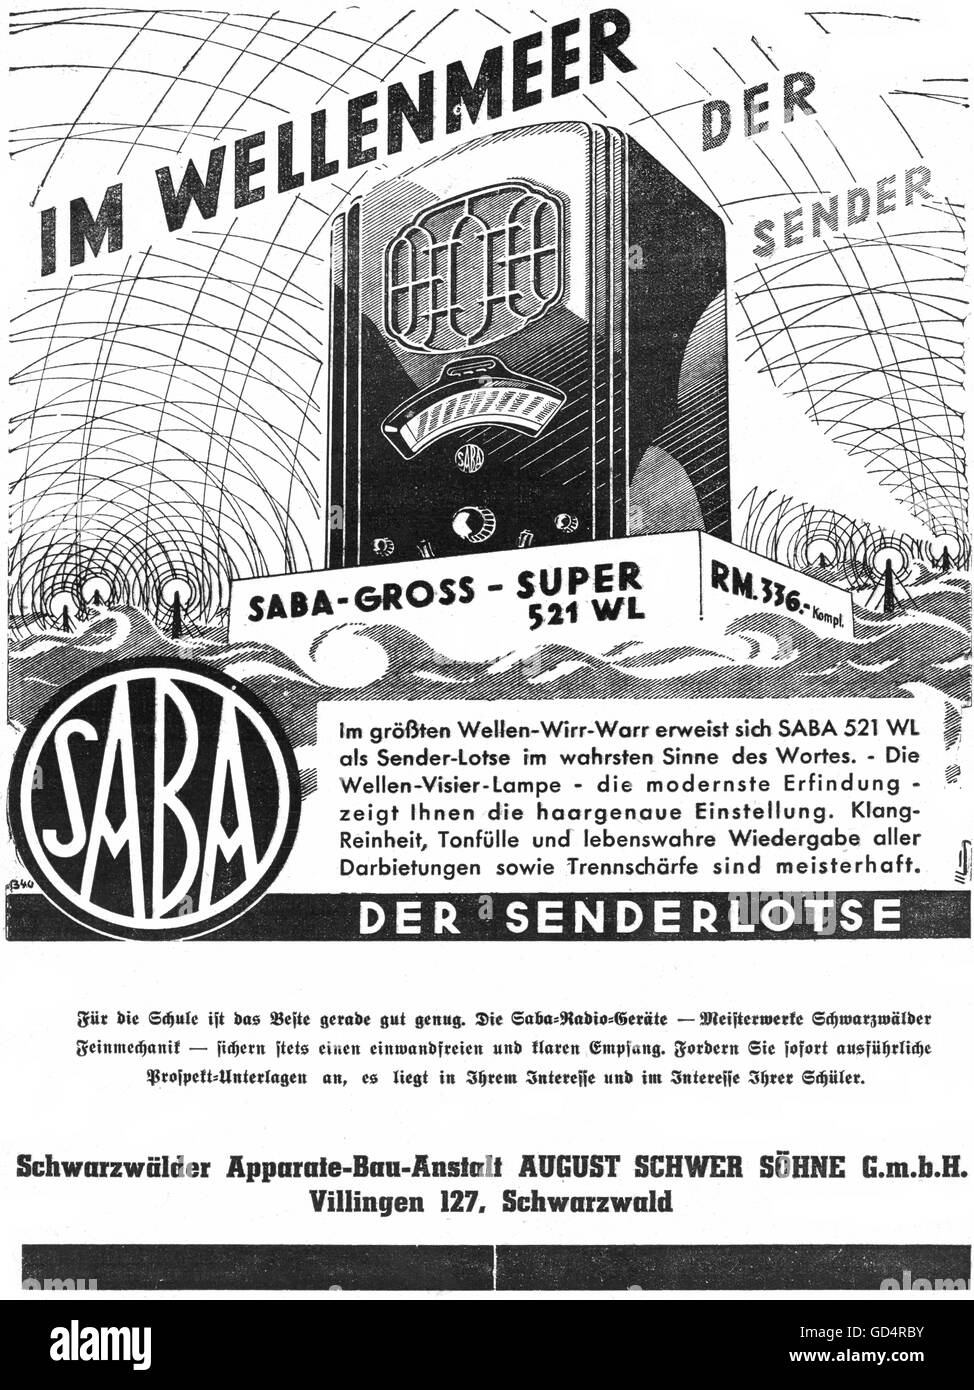 Pubblicità, radio, Saba 521 WL, Schwarzwälder-apparate-Bau-Anstalt, August Schwer Sons private limited Corporation, Villingen, pubblicità, agosto 1934, diritti-aggiuntivi-clearences-non disponibile Foto Stock